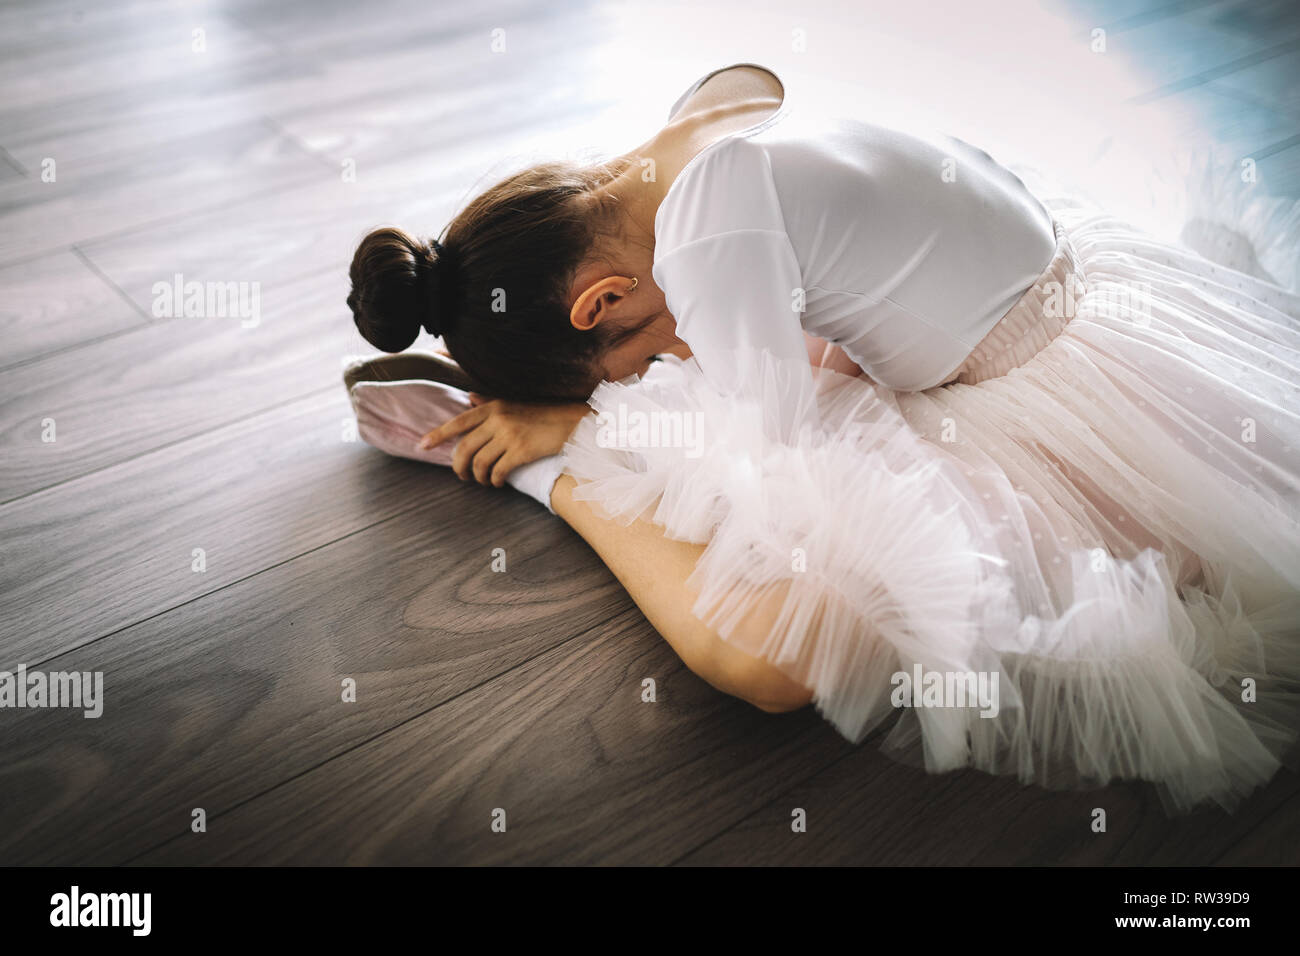 Junge Ballerina in Tutu üben Tanzschritte. Junge Mädchen im Ballett Kleid  in der Tanzschule Stockfotografie - Alamy